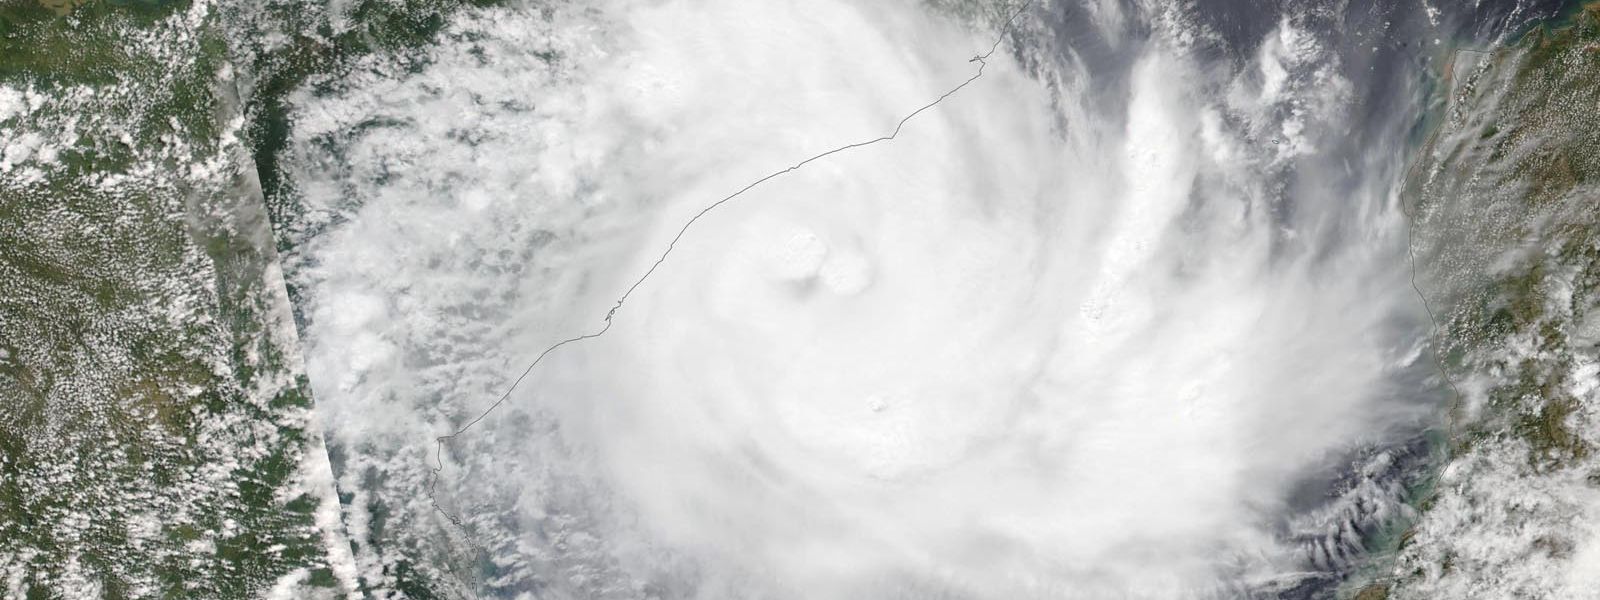 World's longest cyclone, Freddy, strikes again